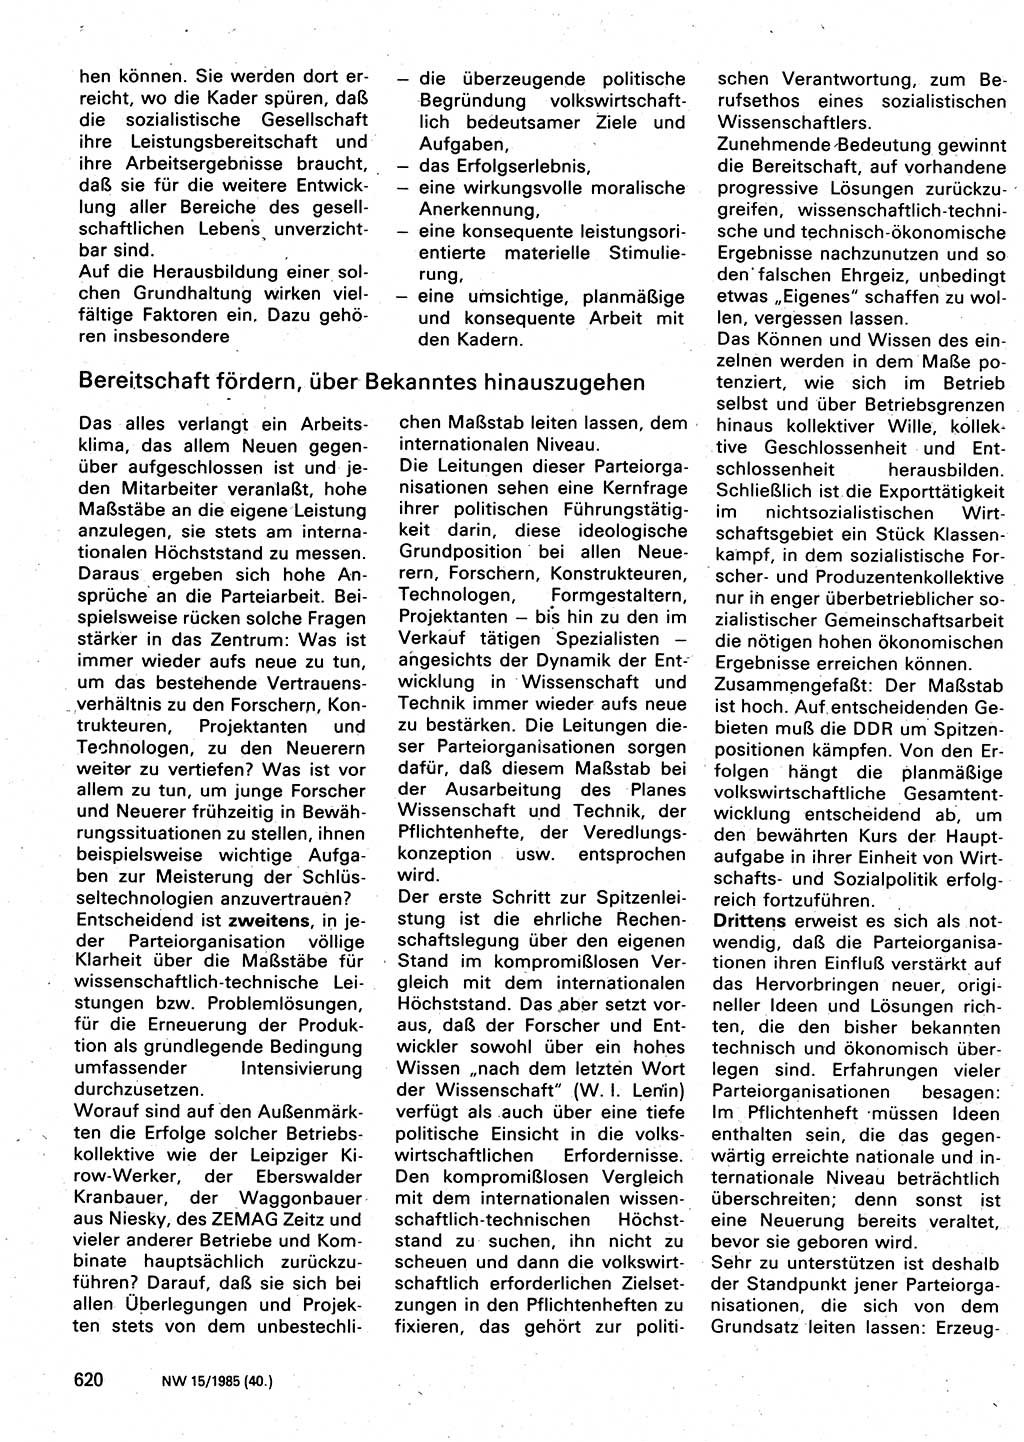 Neuer Weg (NW), Organ des Zentralkomitees (ZK) der SED (Sozialistische Einheitspartei Deutschlands) für Fragen des Parteilebens, 40. Jahrgang [Deutsche Demokratische Republik (DDR)] 1985, Seite 620 (NW ZK SED DDR 1985, S. 620)